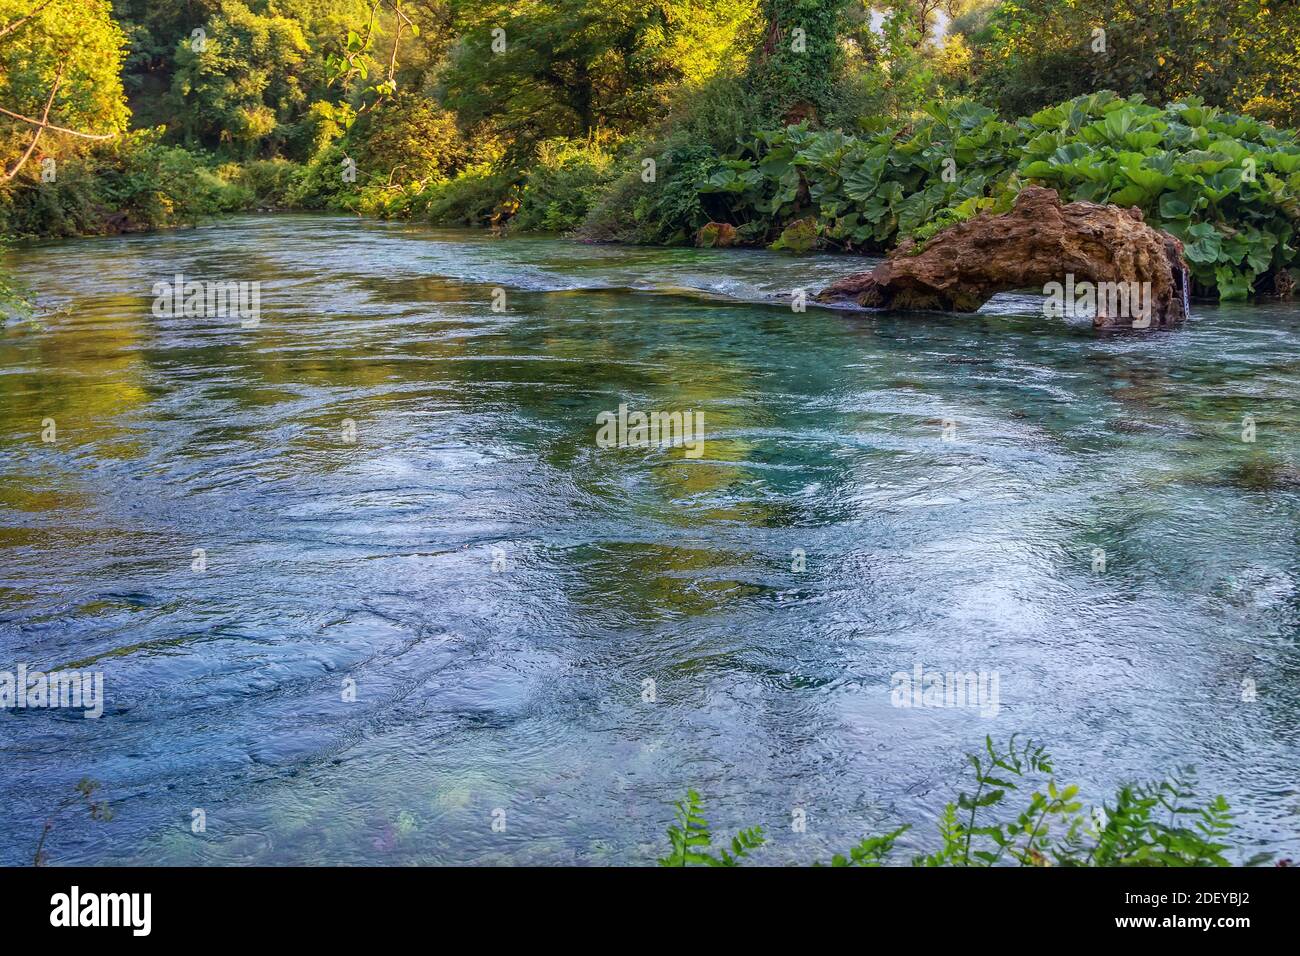 Paisaje veraniego – primavera kárstica – fuente fluvial en el bosque, agua clara y exuberante follaje. Punto de referencia natural – Blue Eye - en Albania. Foto de stock